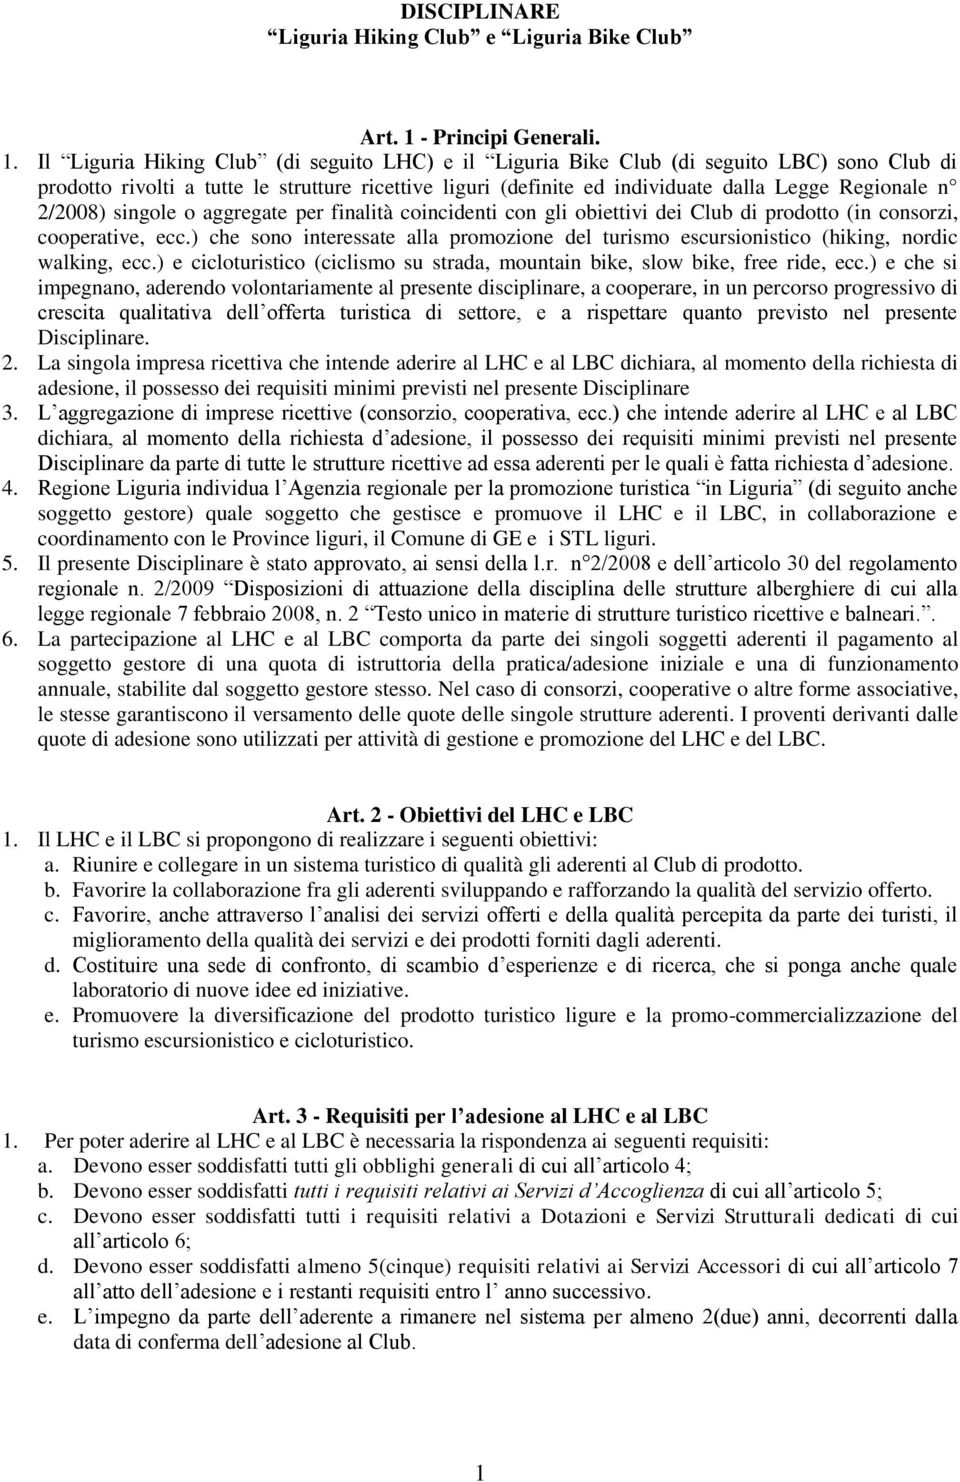 Il Liguria Hiking Club (di seguito LHC) e il Liguria Bike Club (di seguito LBC) sono Club di prodotto rivolti a tutte le strutture ricettive liguri (definite ed individuate dalla Legge Regionale n